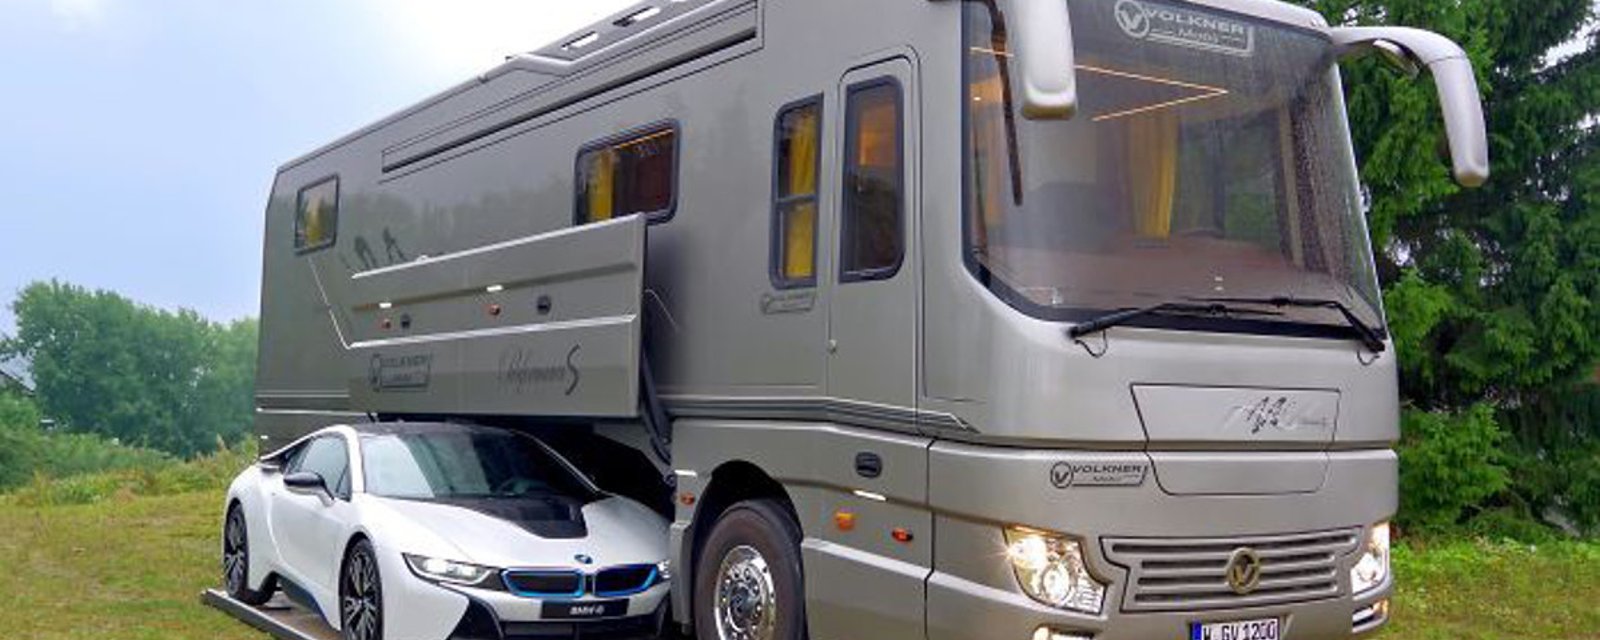 Ce camping-car de 1.7 millions$ avec garage intégré parait bien ordinaire... Jusqu'à ce qu'on voit l'intérieur! 